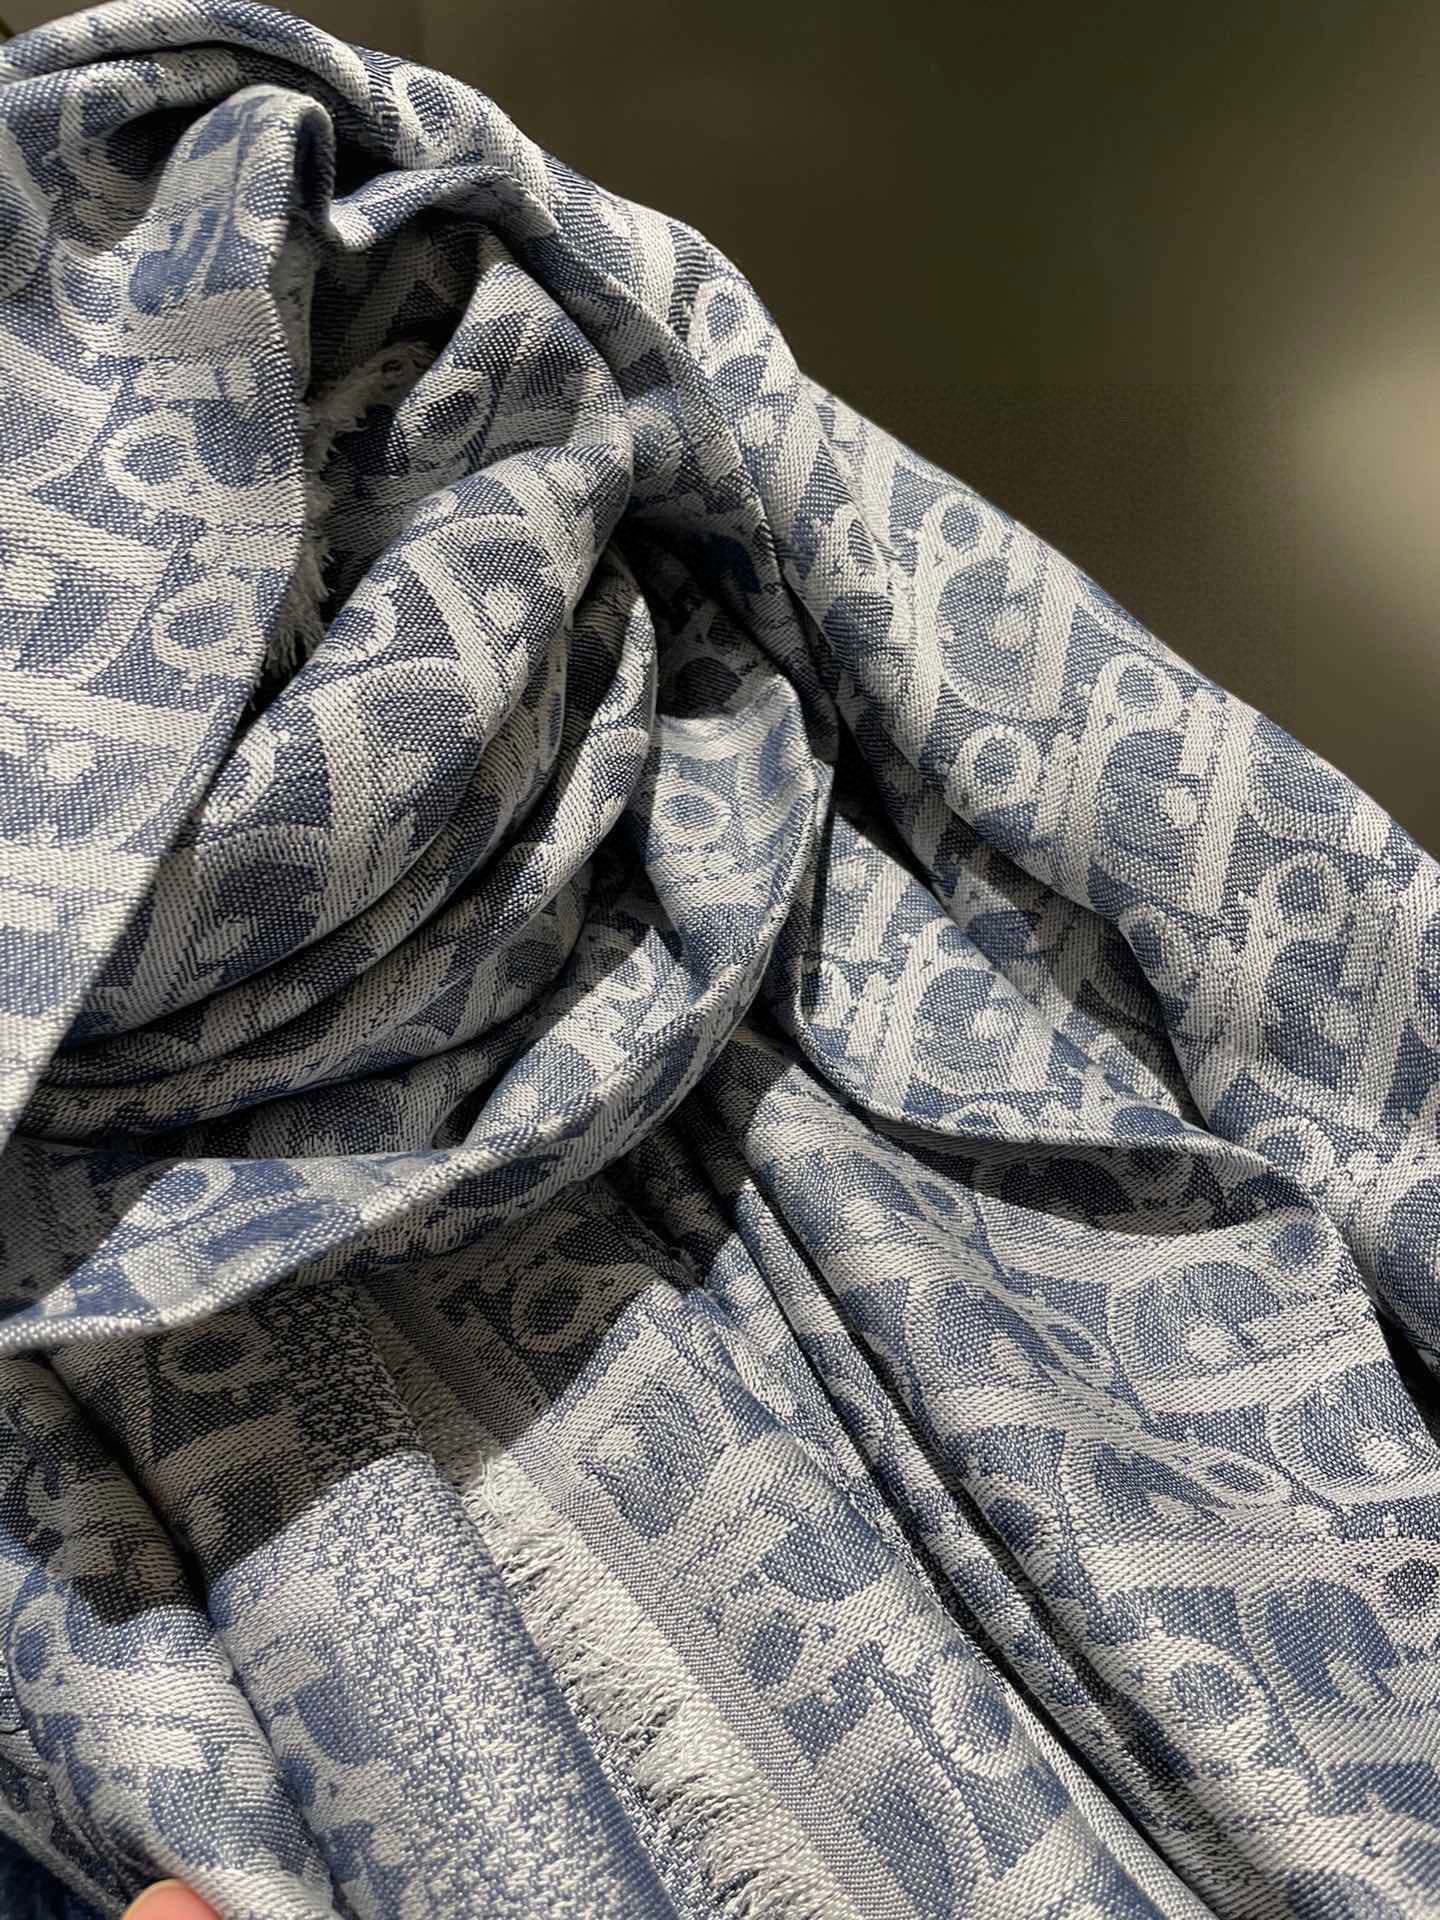 高版本Dior披肩️经典方巾字母搭配丝毛混纺的华美质感与成衣和配饰系列单品搭配相宜尺寸140x140cm